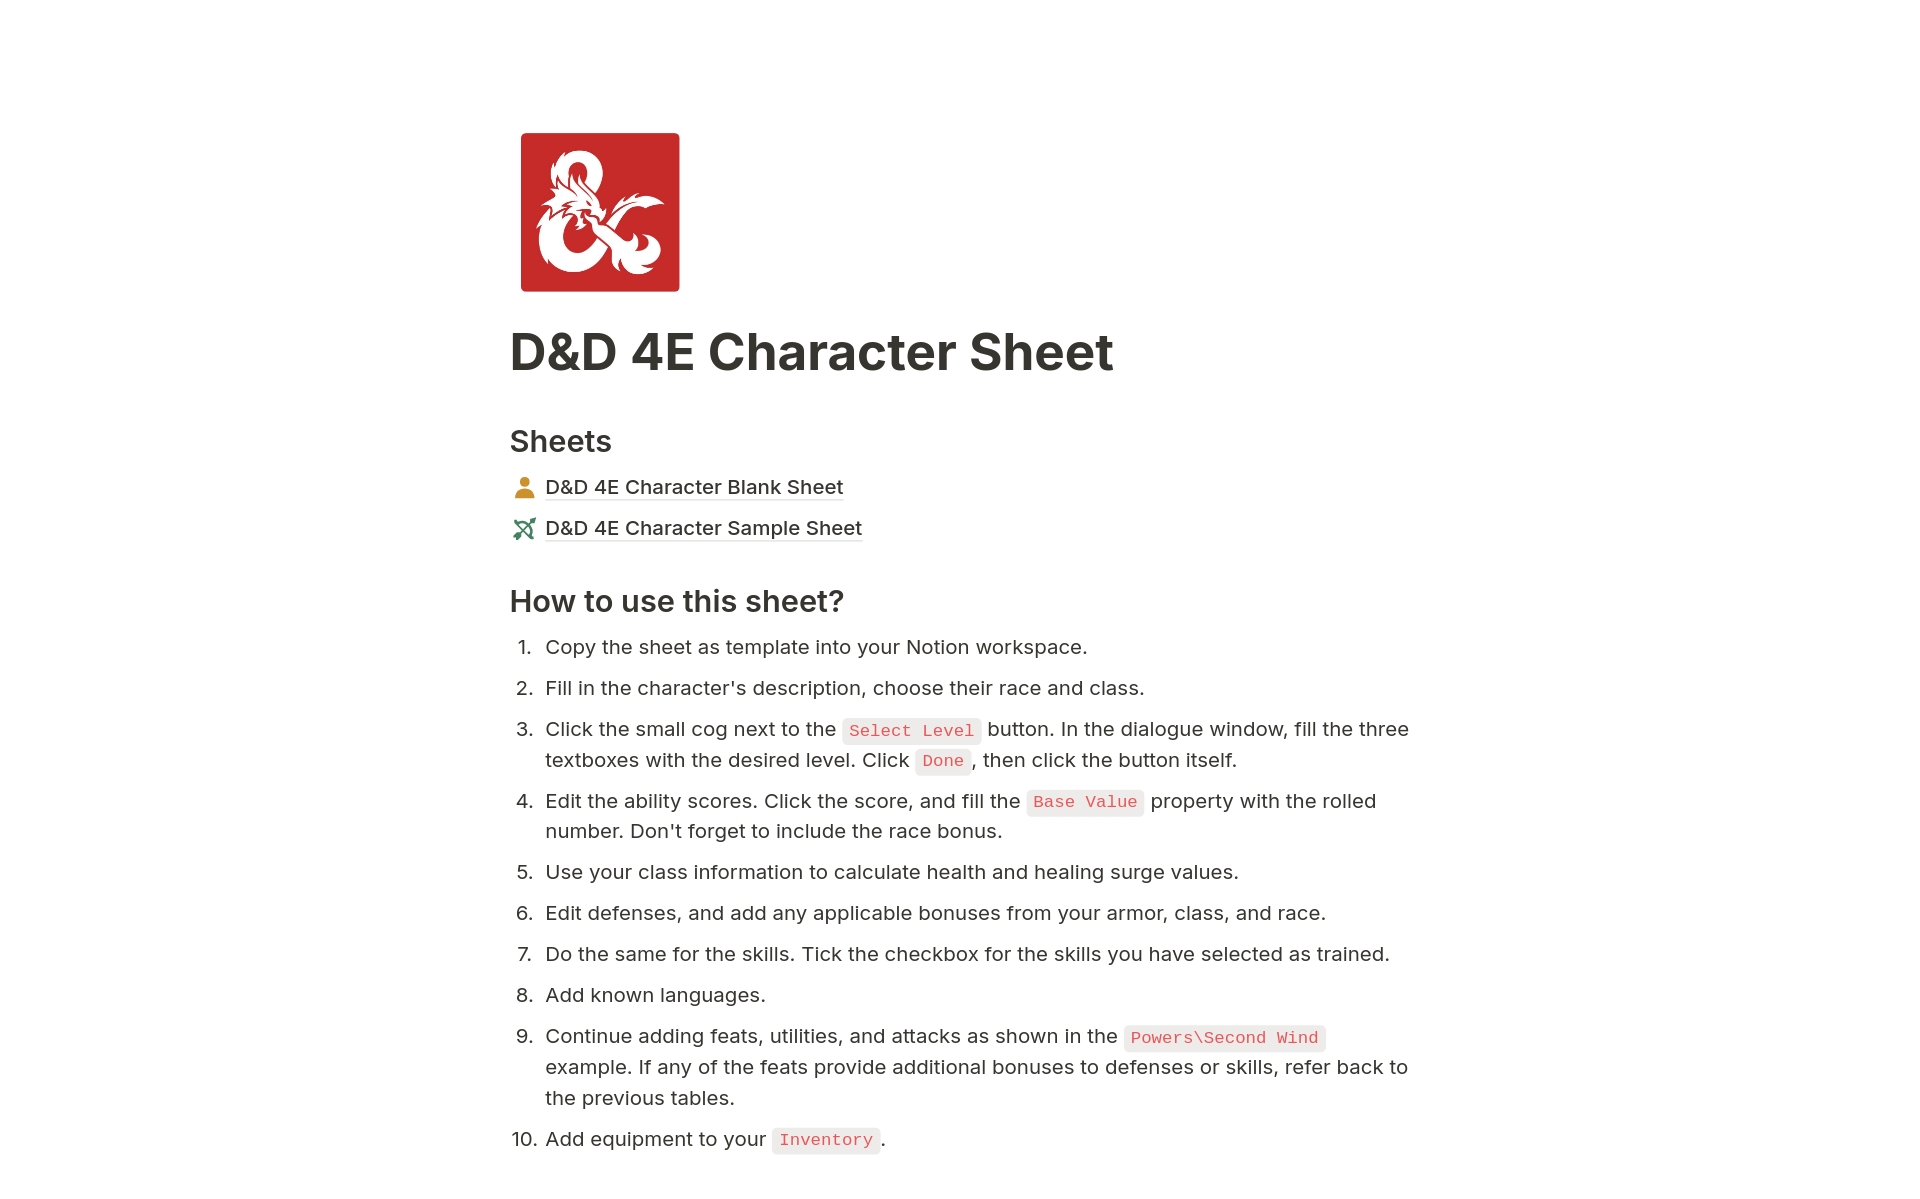 D&D 4E Character Sheet님의 템플릿 미리보기